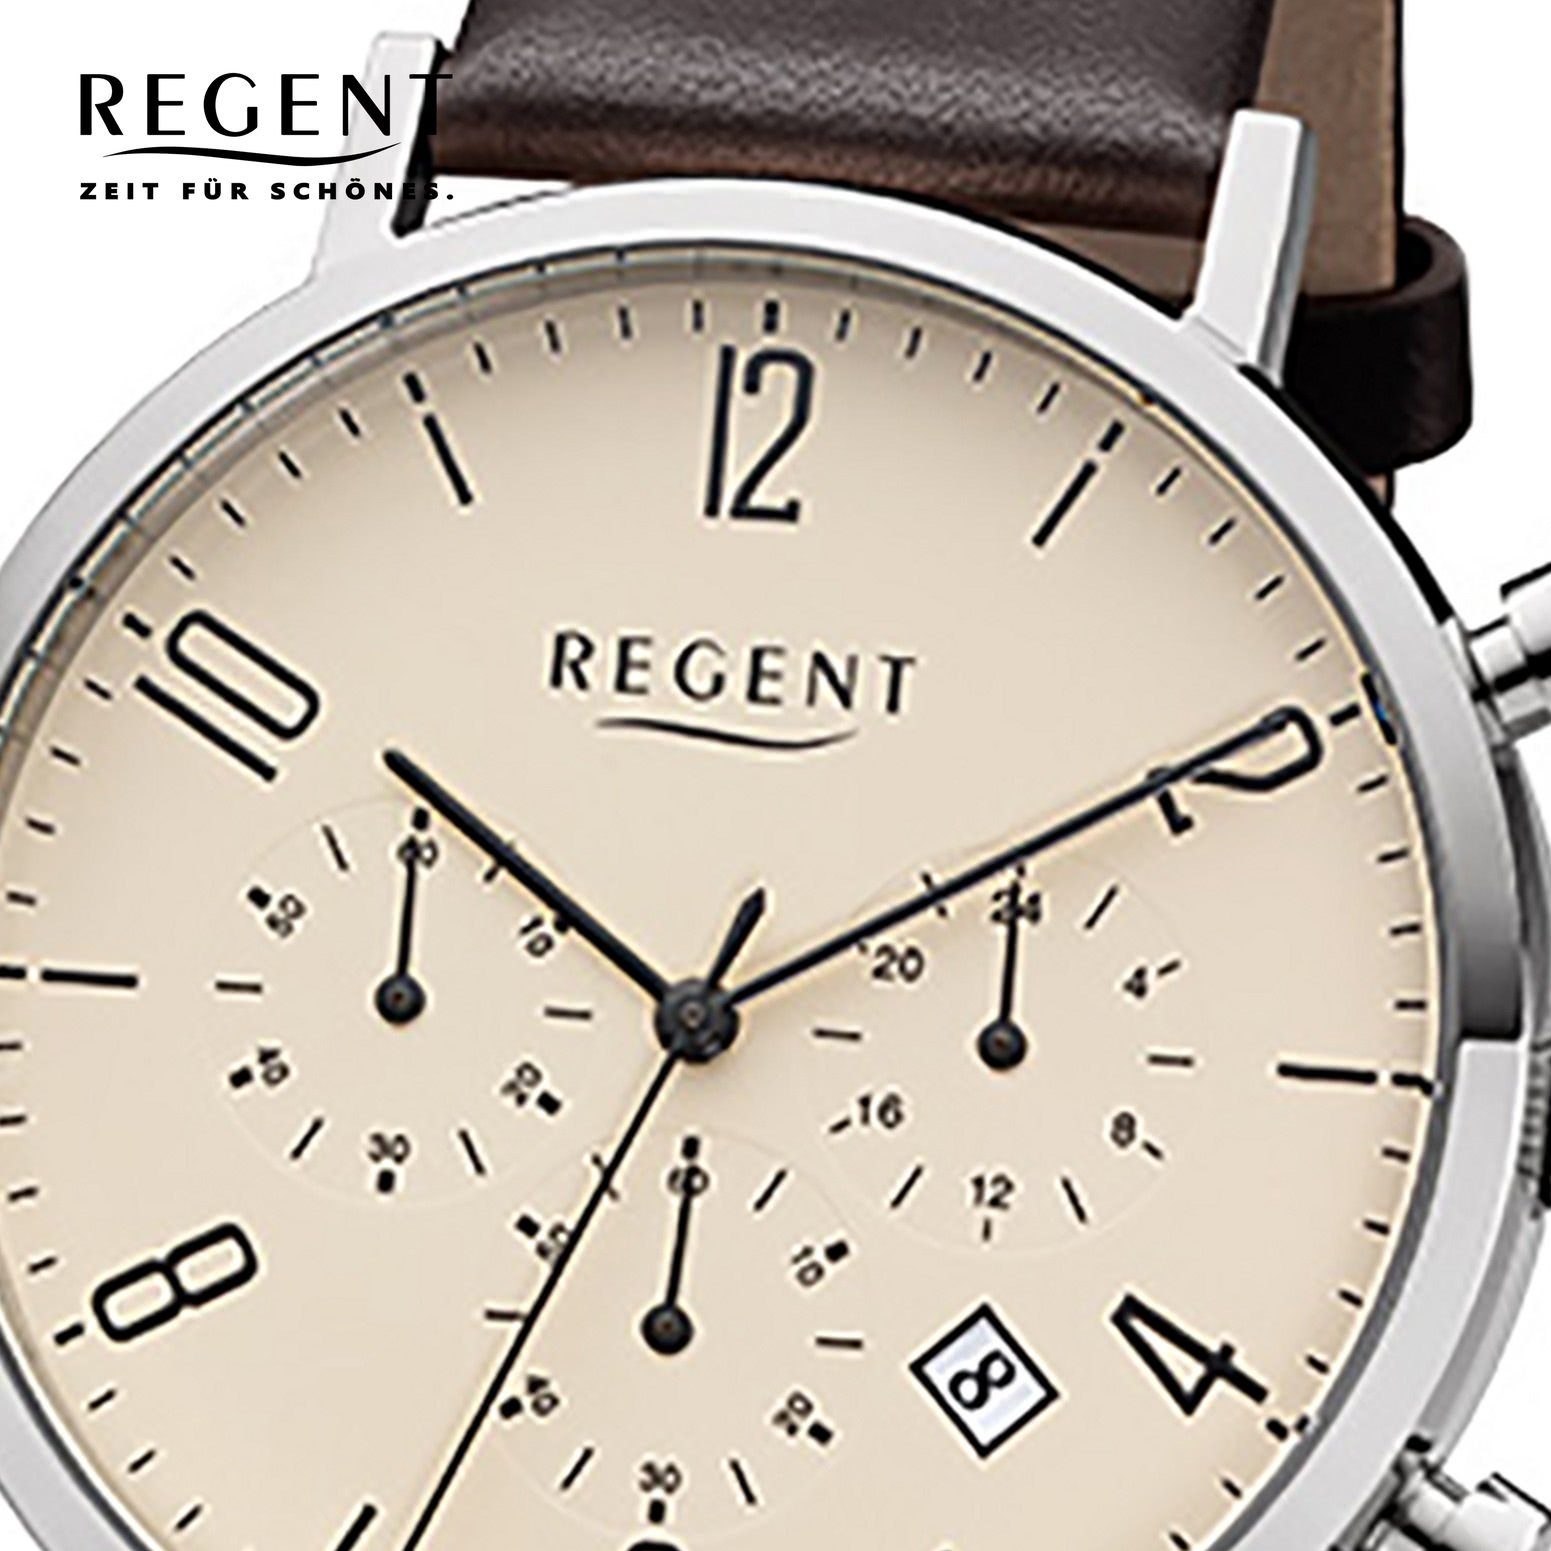 (ca. Elegant rund, Herren Chronograph 42mm), Herren-Armbanduhr Armbanduhr groß Regent Edelstahl, dunkelbraun, Regent